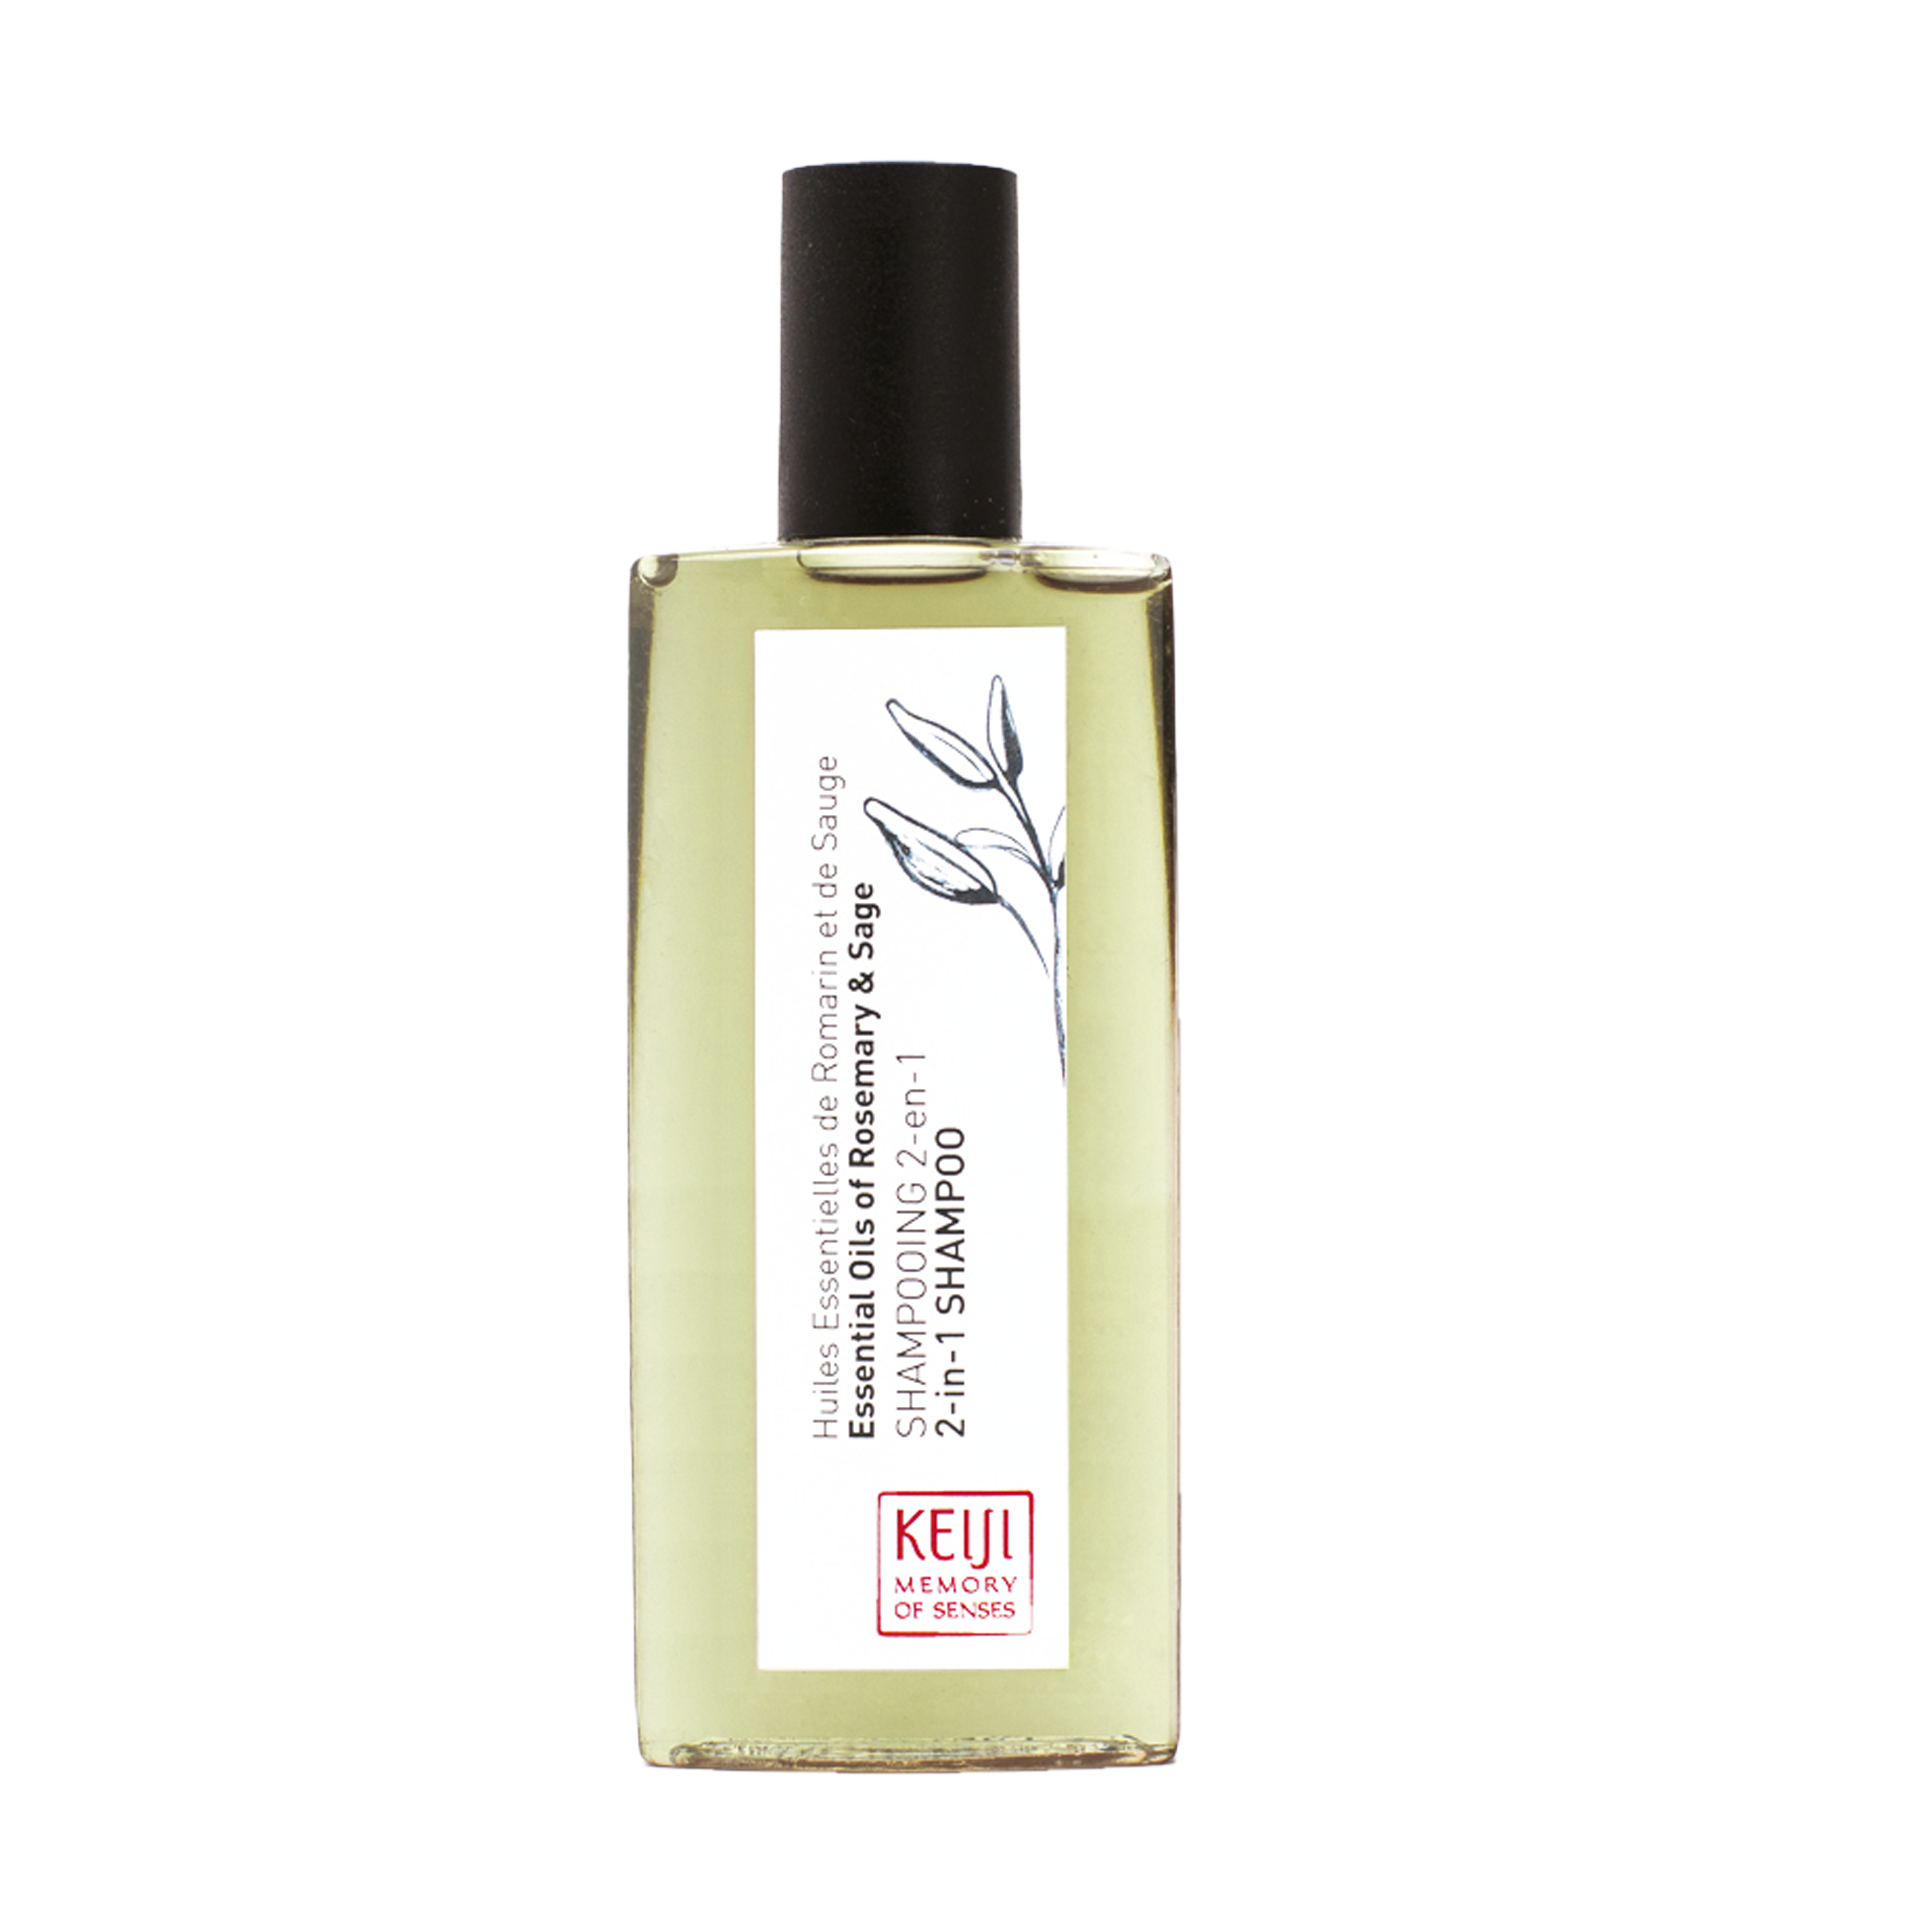 Badeduschgel/Shampoo | Keiji Aromatherapy Flacon | 50 ml